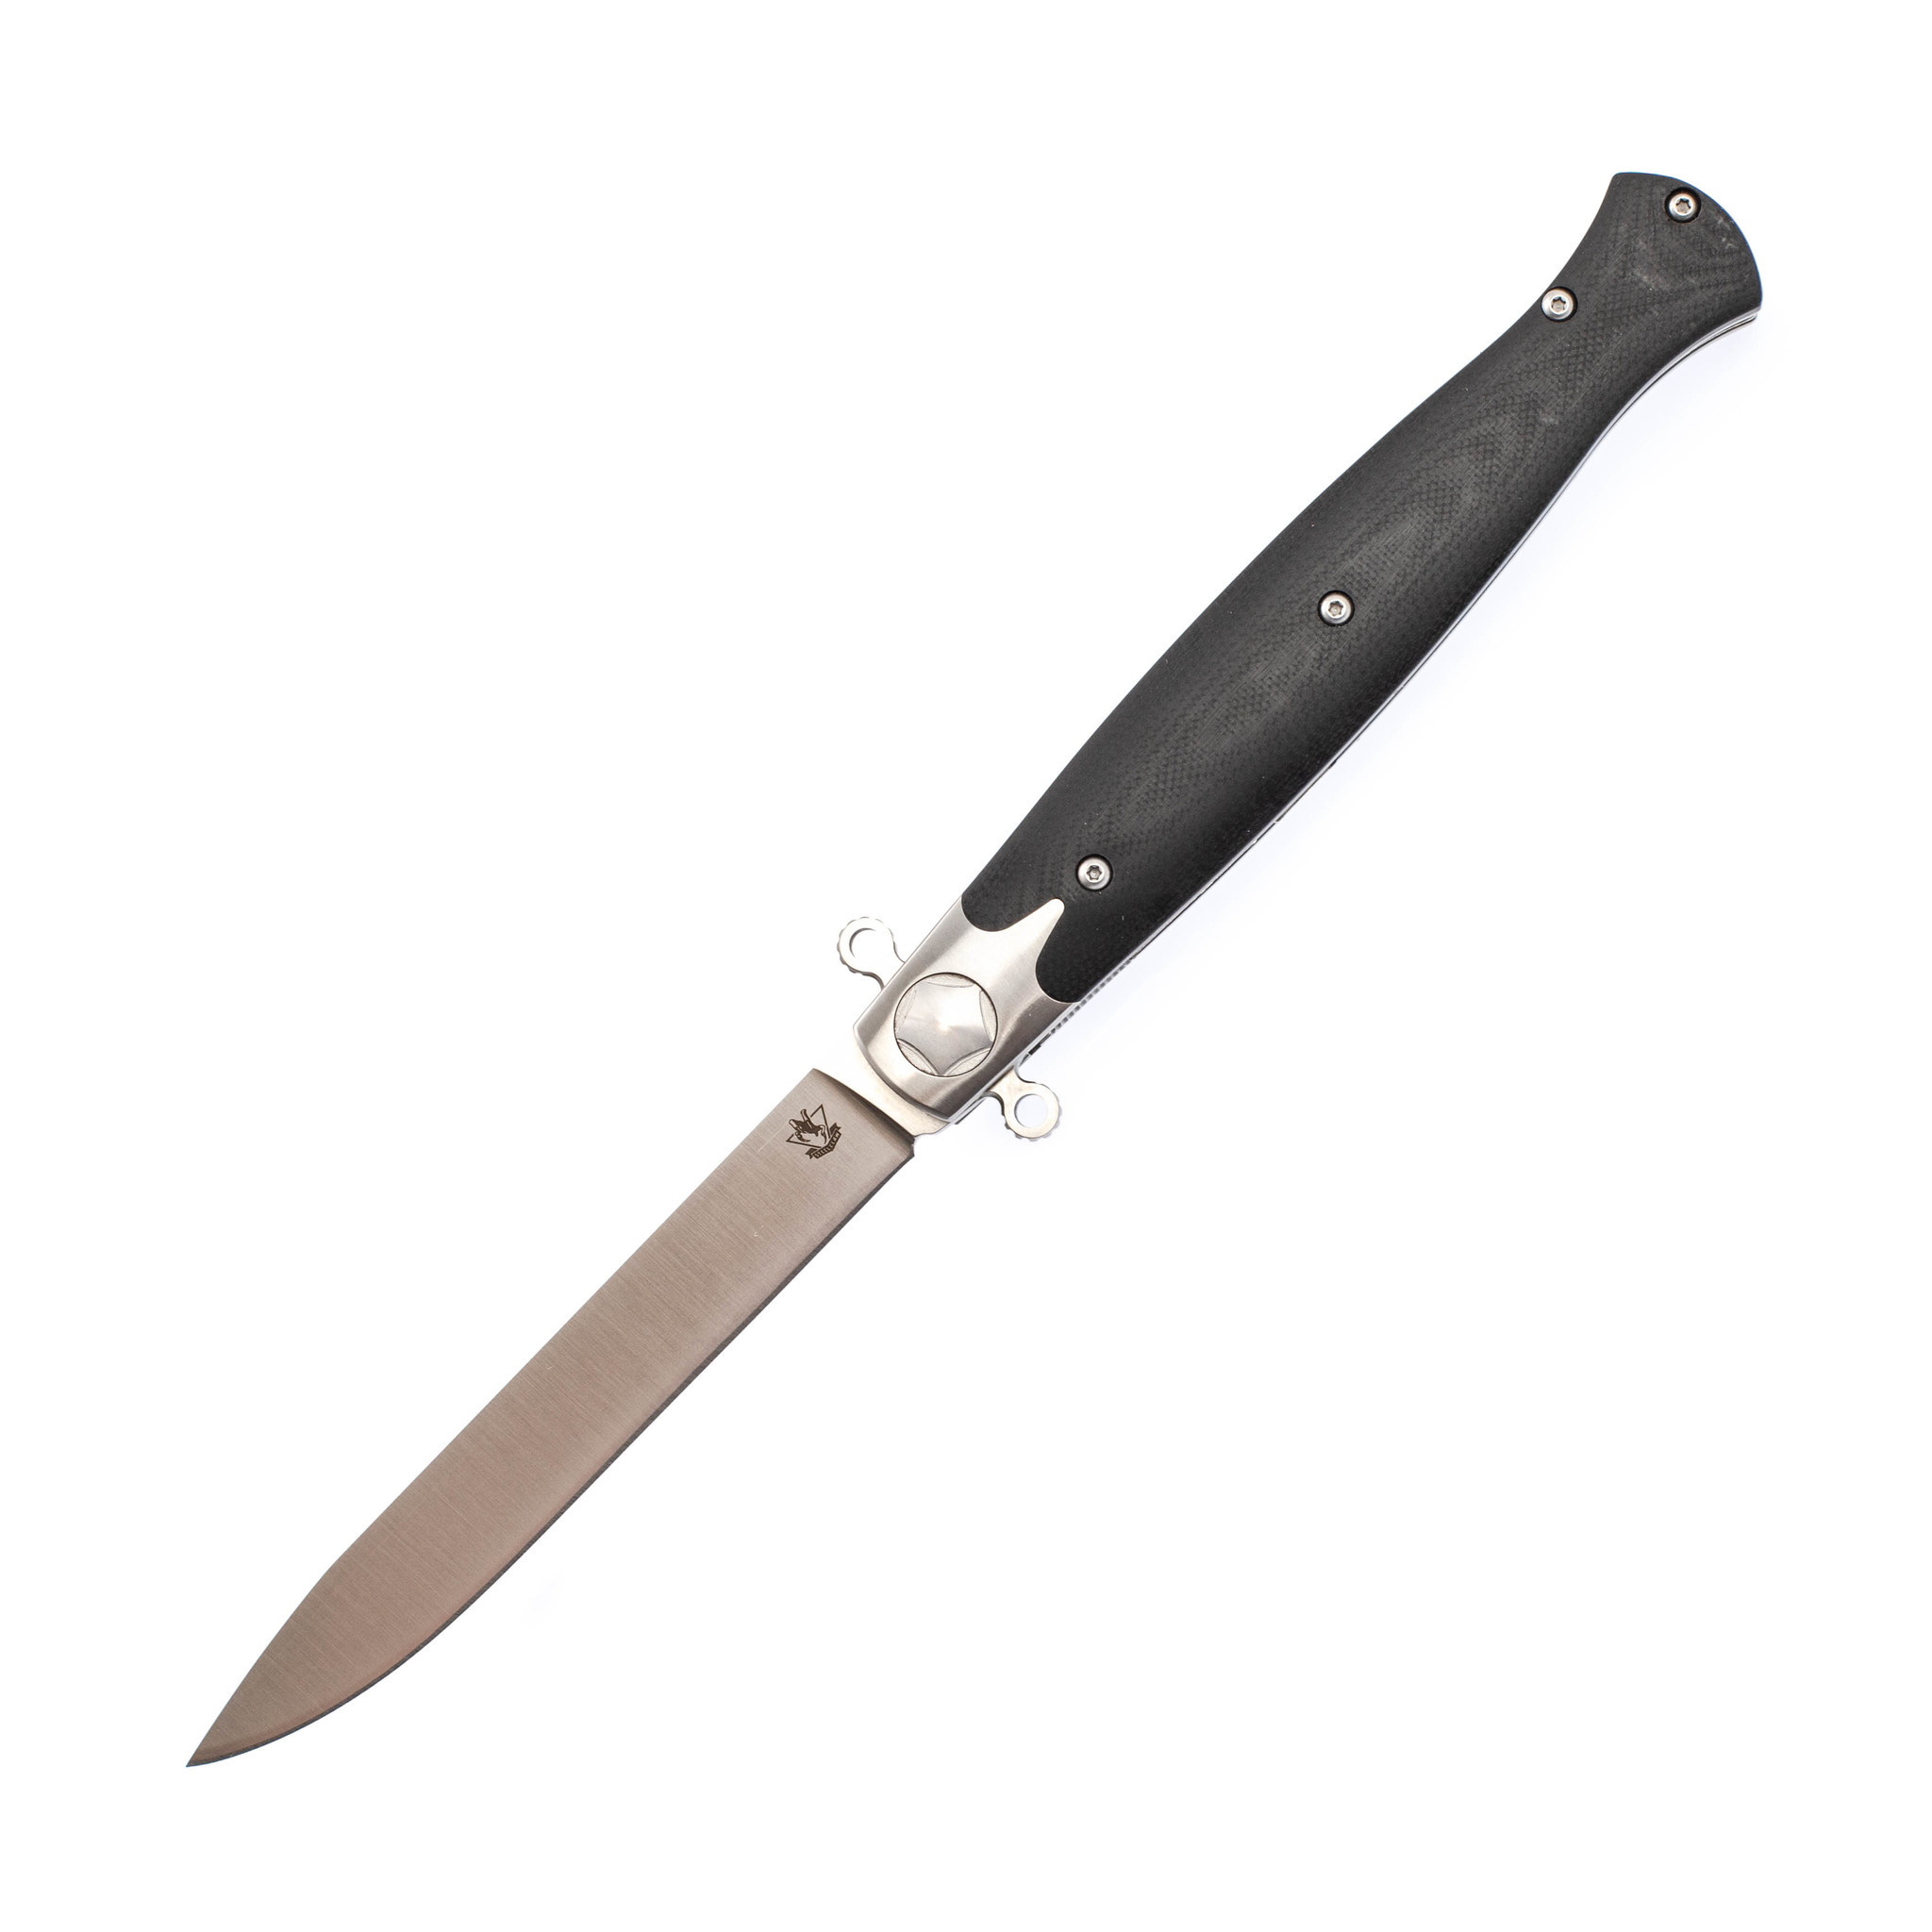 Складной нож Командор-01, сталь D2 складной нож командор 03 сталь d2 рукоять g10